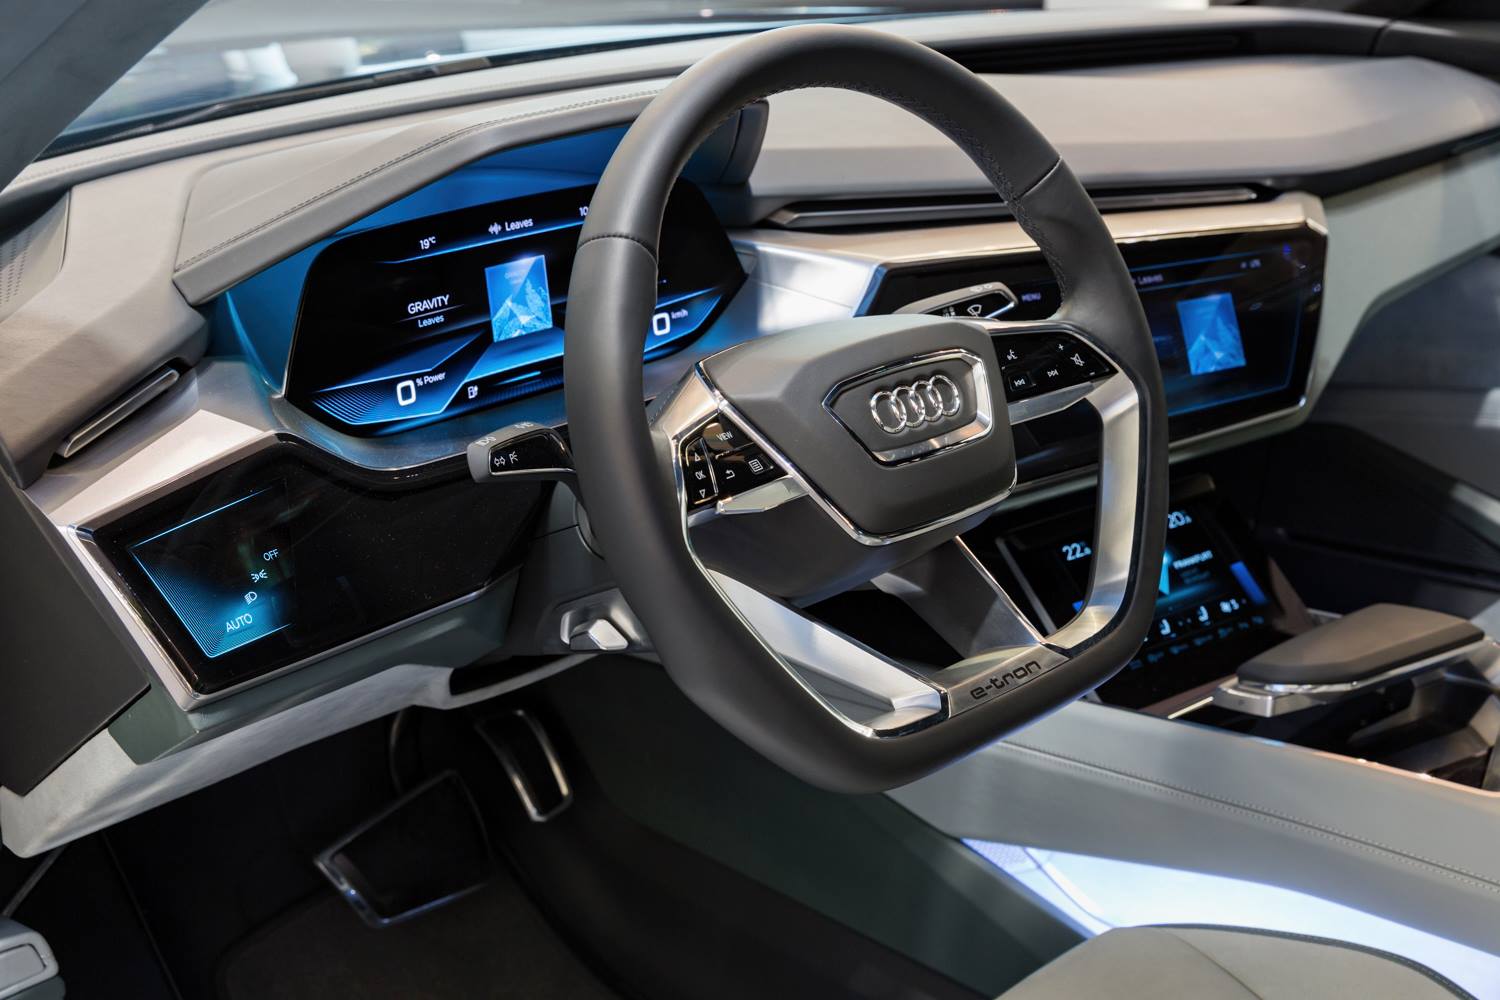 "أودي" A8 الجديدة ستكون أول موديل إنتاج بمقصورة أودي الافتراضية Audi 1